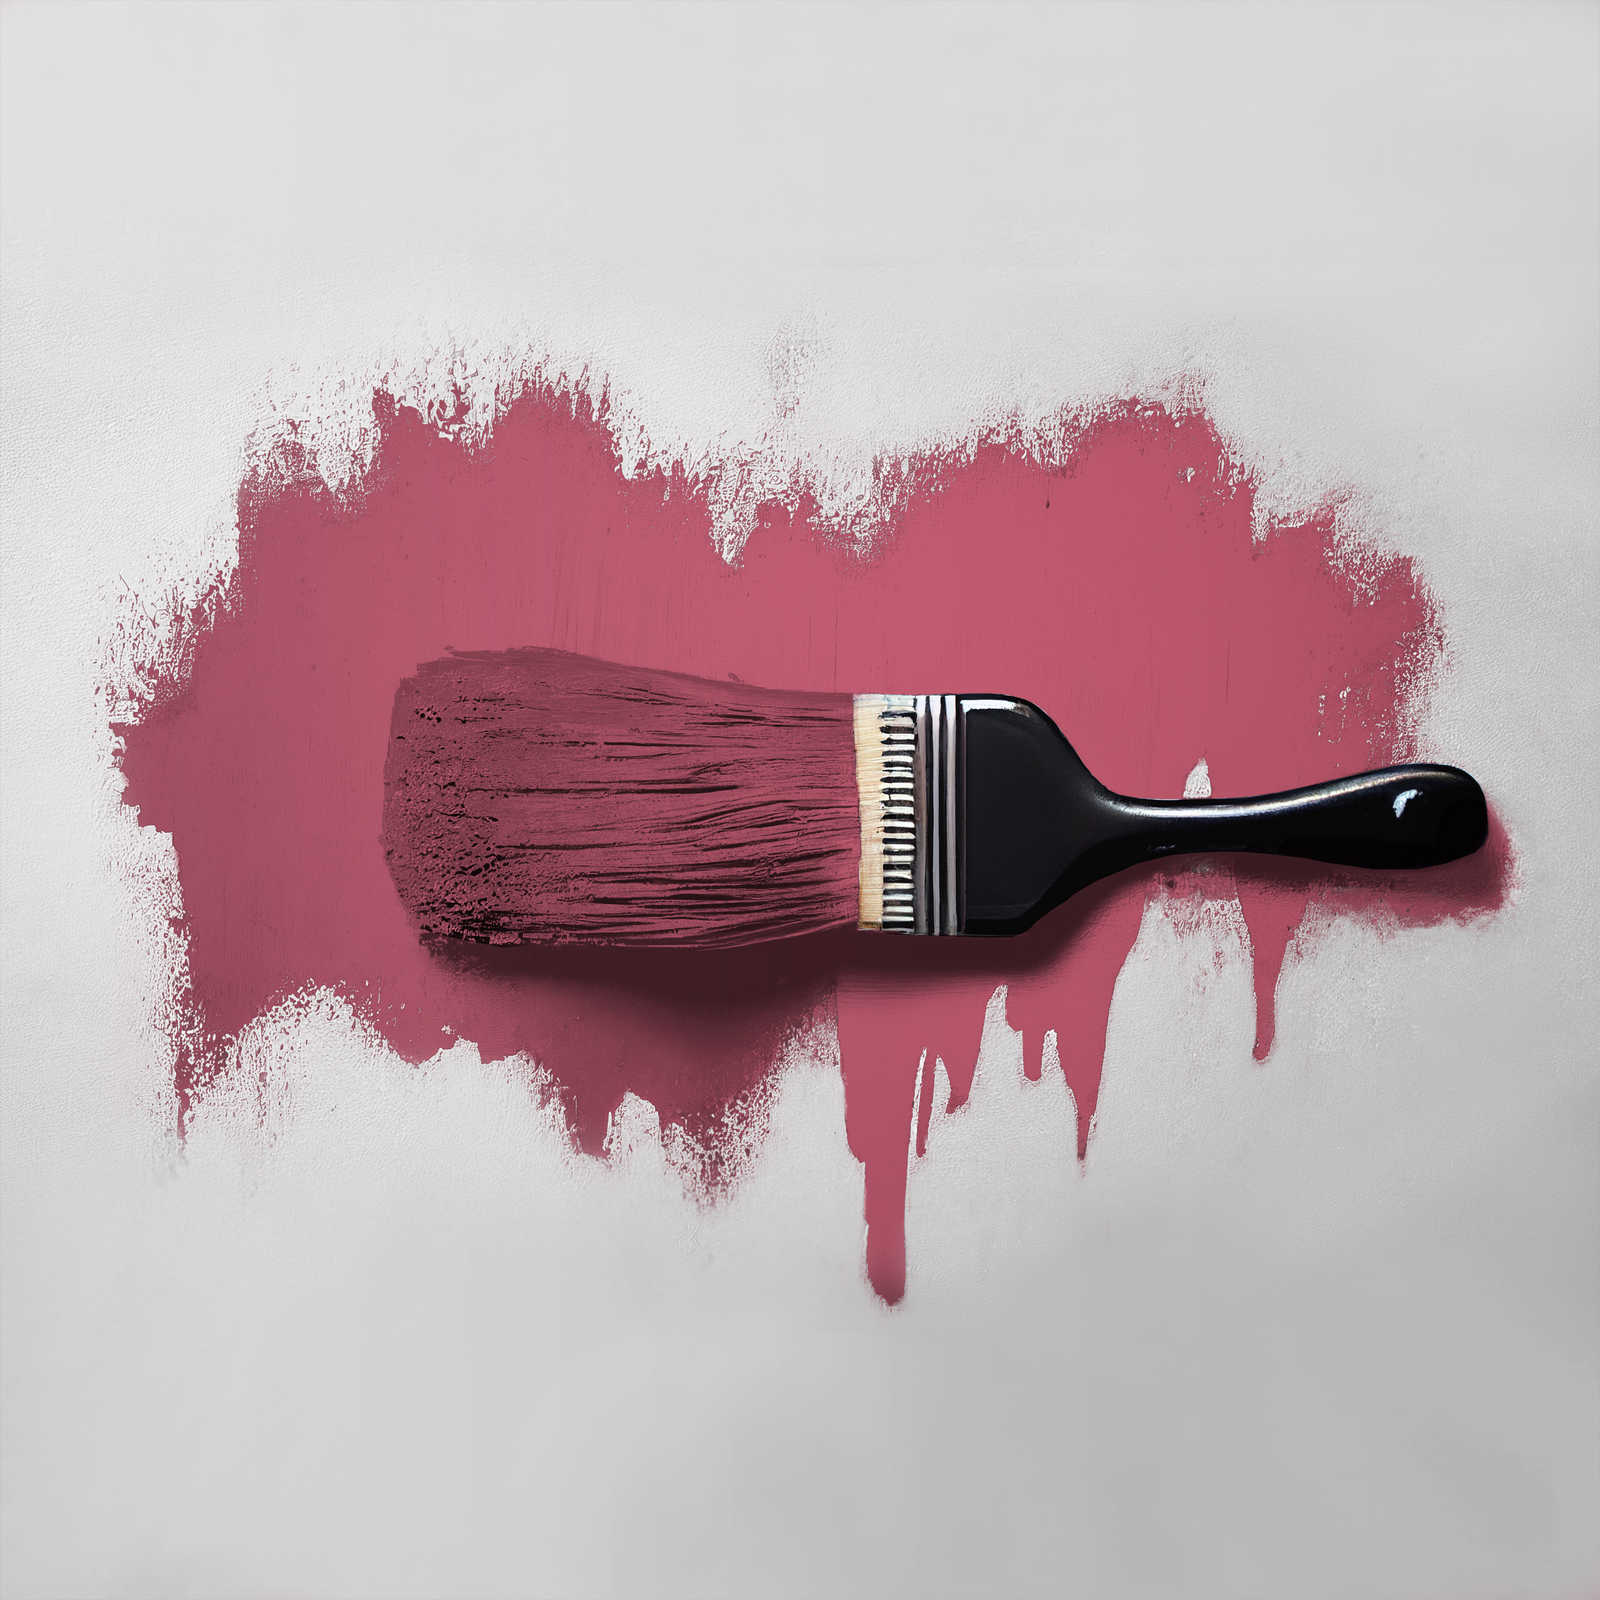             Pintura mural TCK7011 »Rosy Raspberry« en rosa oscuro intensivo – 2,5 litro
        